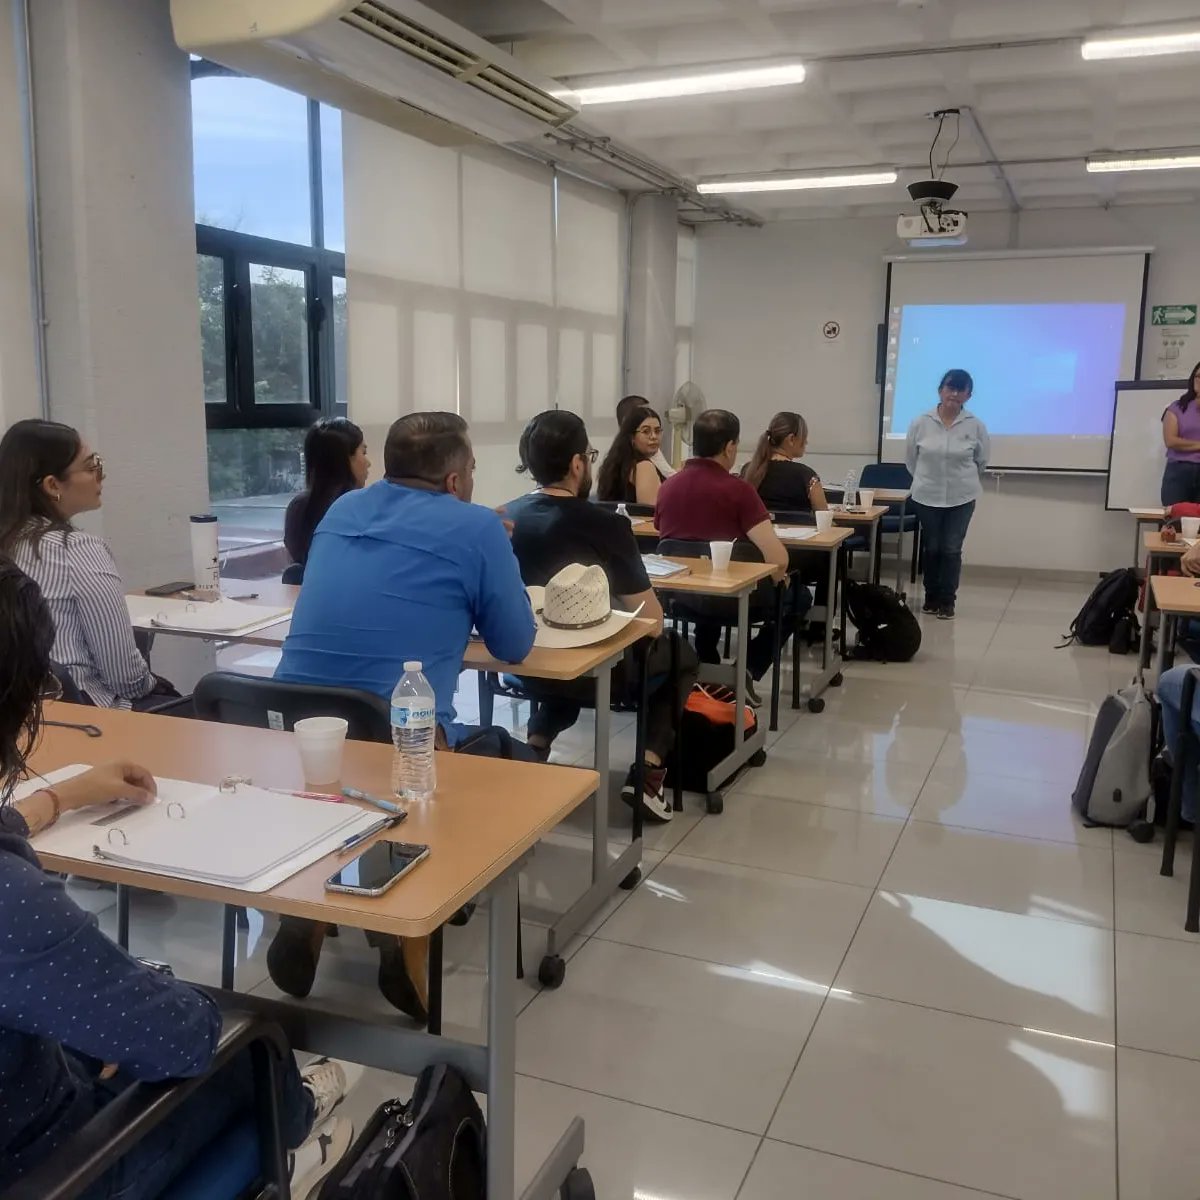 El día de hoy, en la sede Guadalajara del #CIATEJ iniciamos con el curso de Formación de líderes de evaluación sensorial

#cursos #cursosciatej #evaluacionsensorial